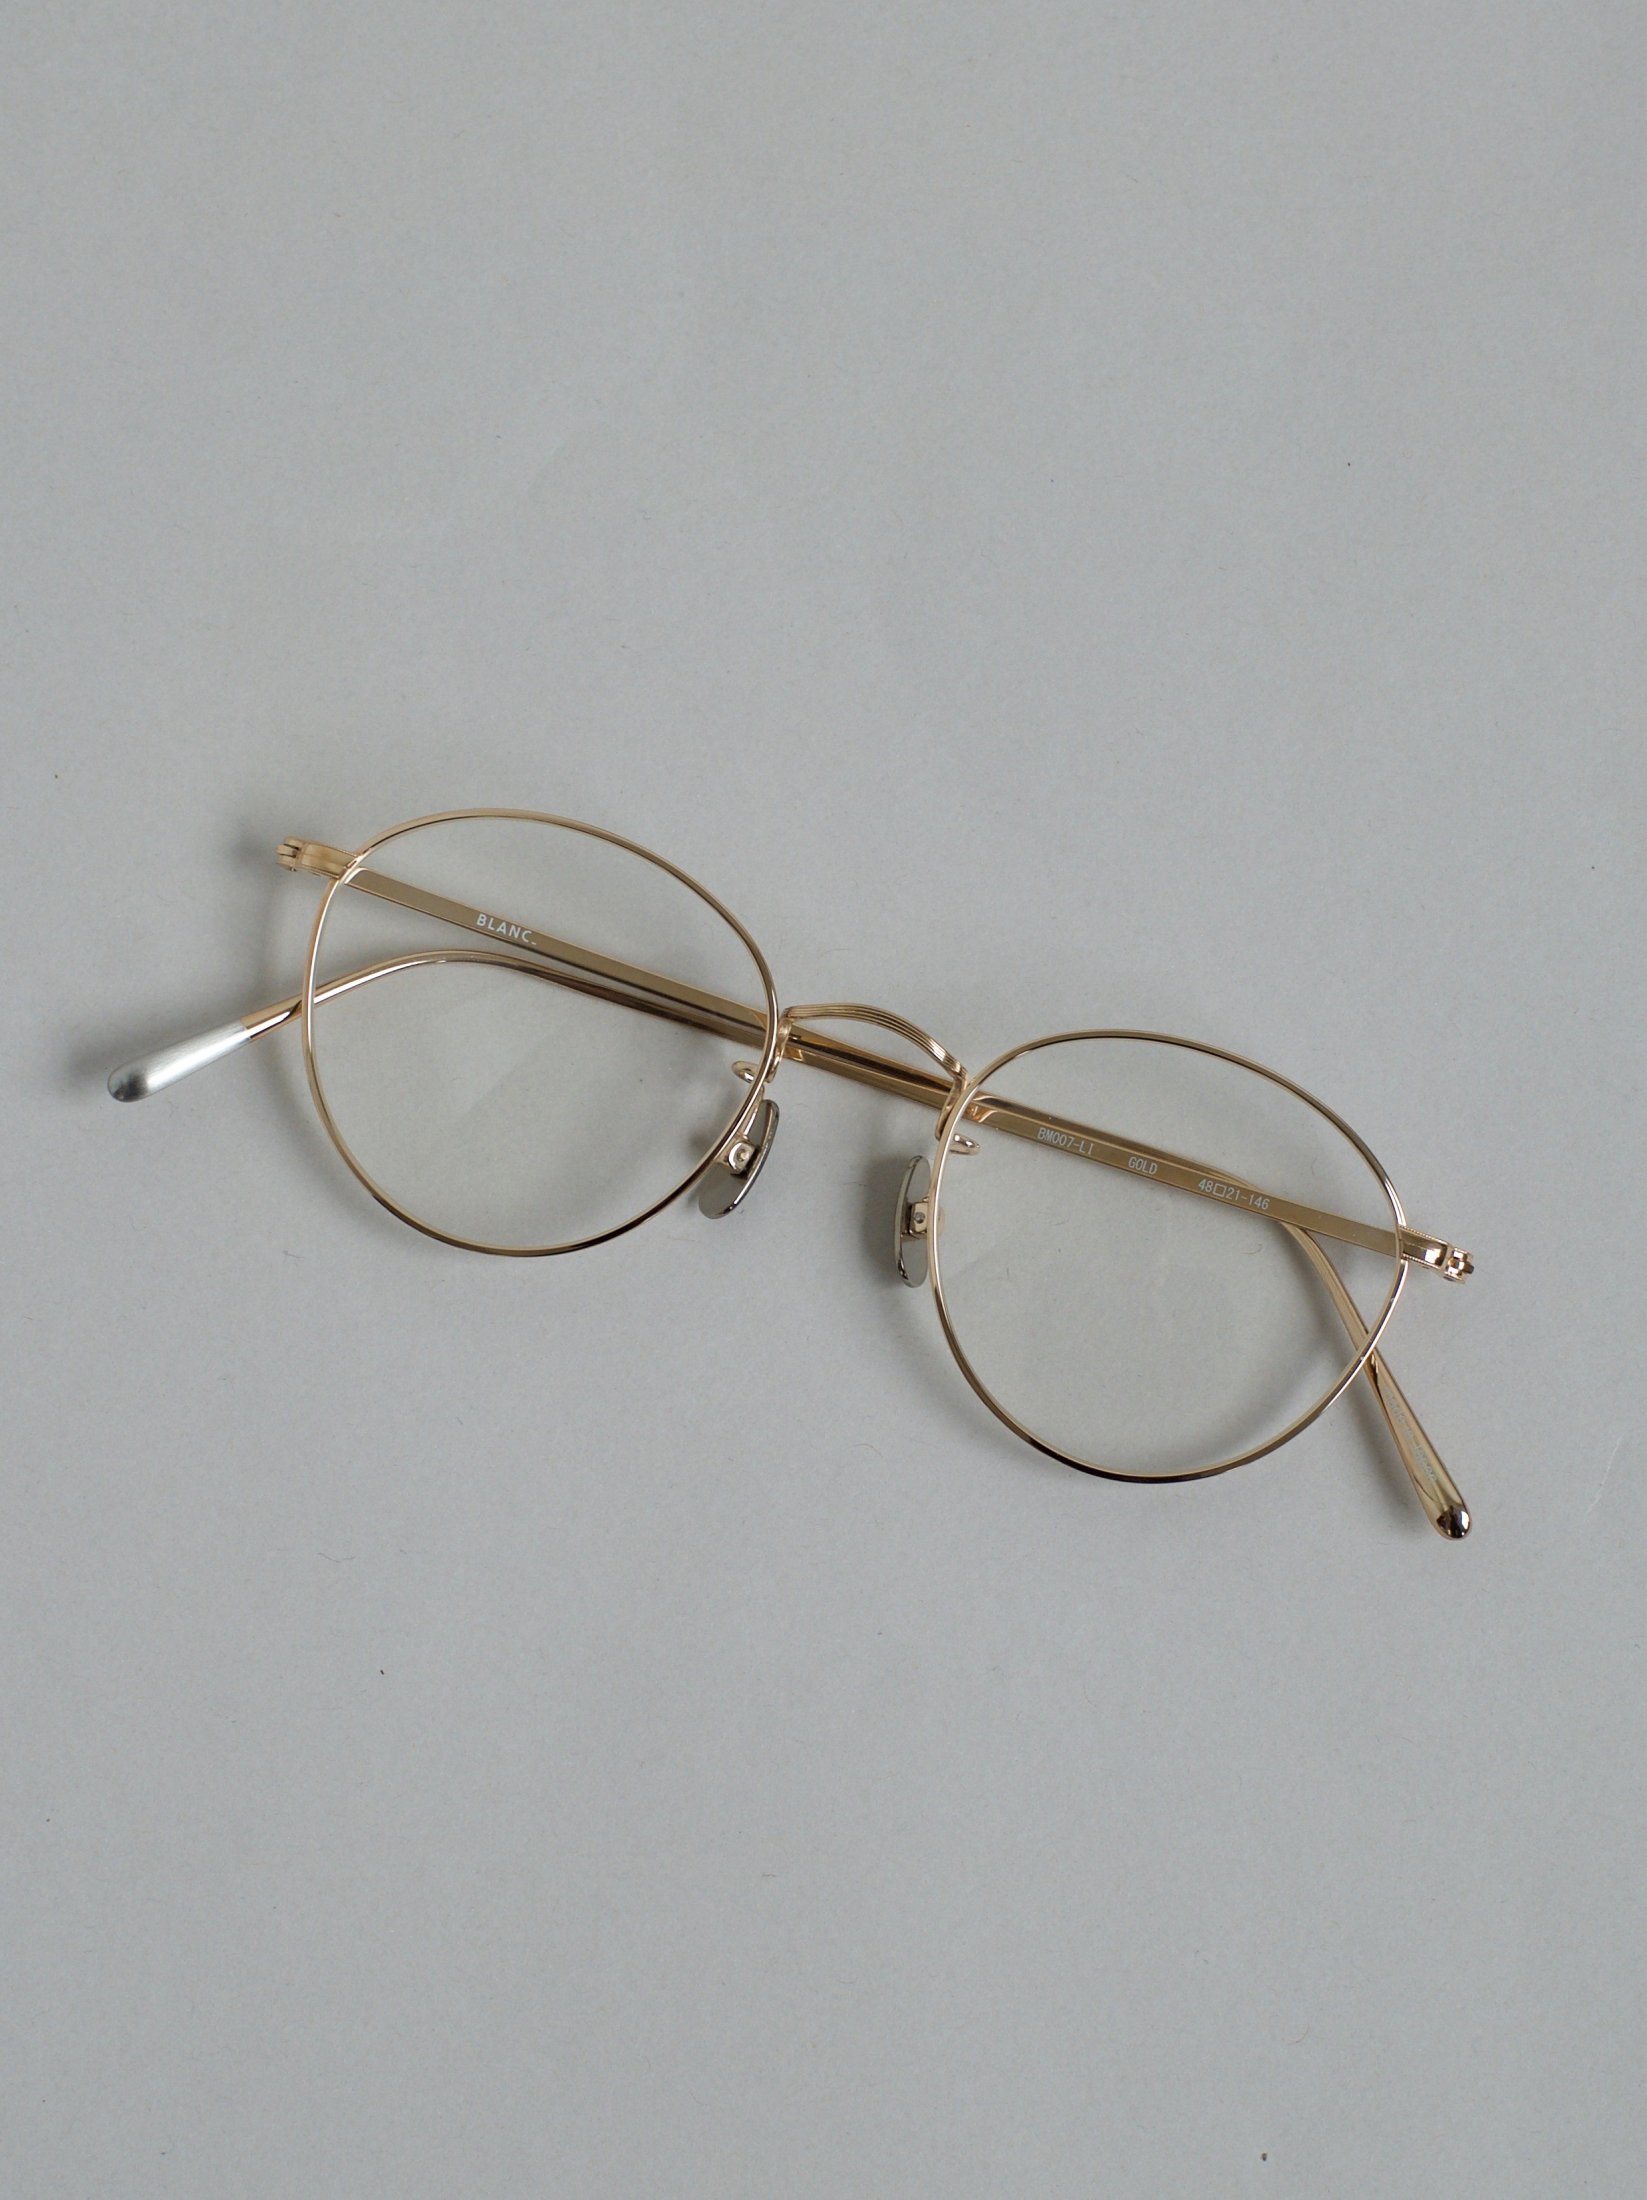 BLANC メガネBM007LI GOLD 1 (choco) CLR - メガネ・老眼鏡